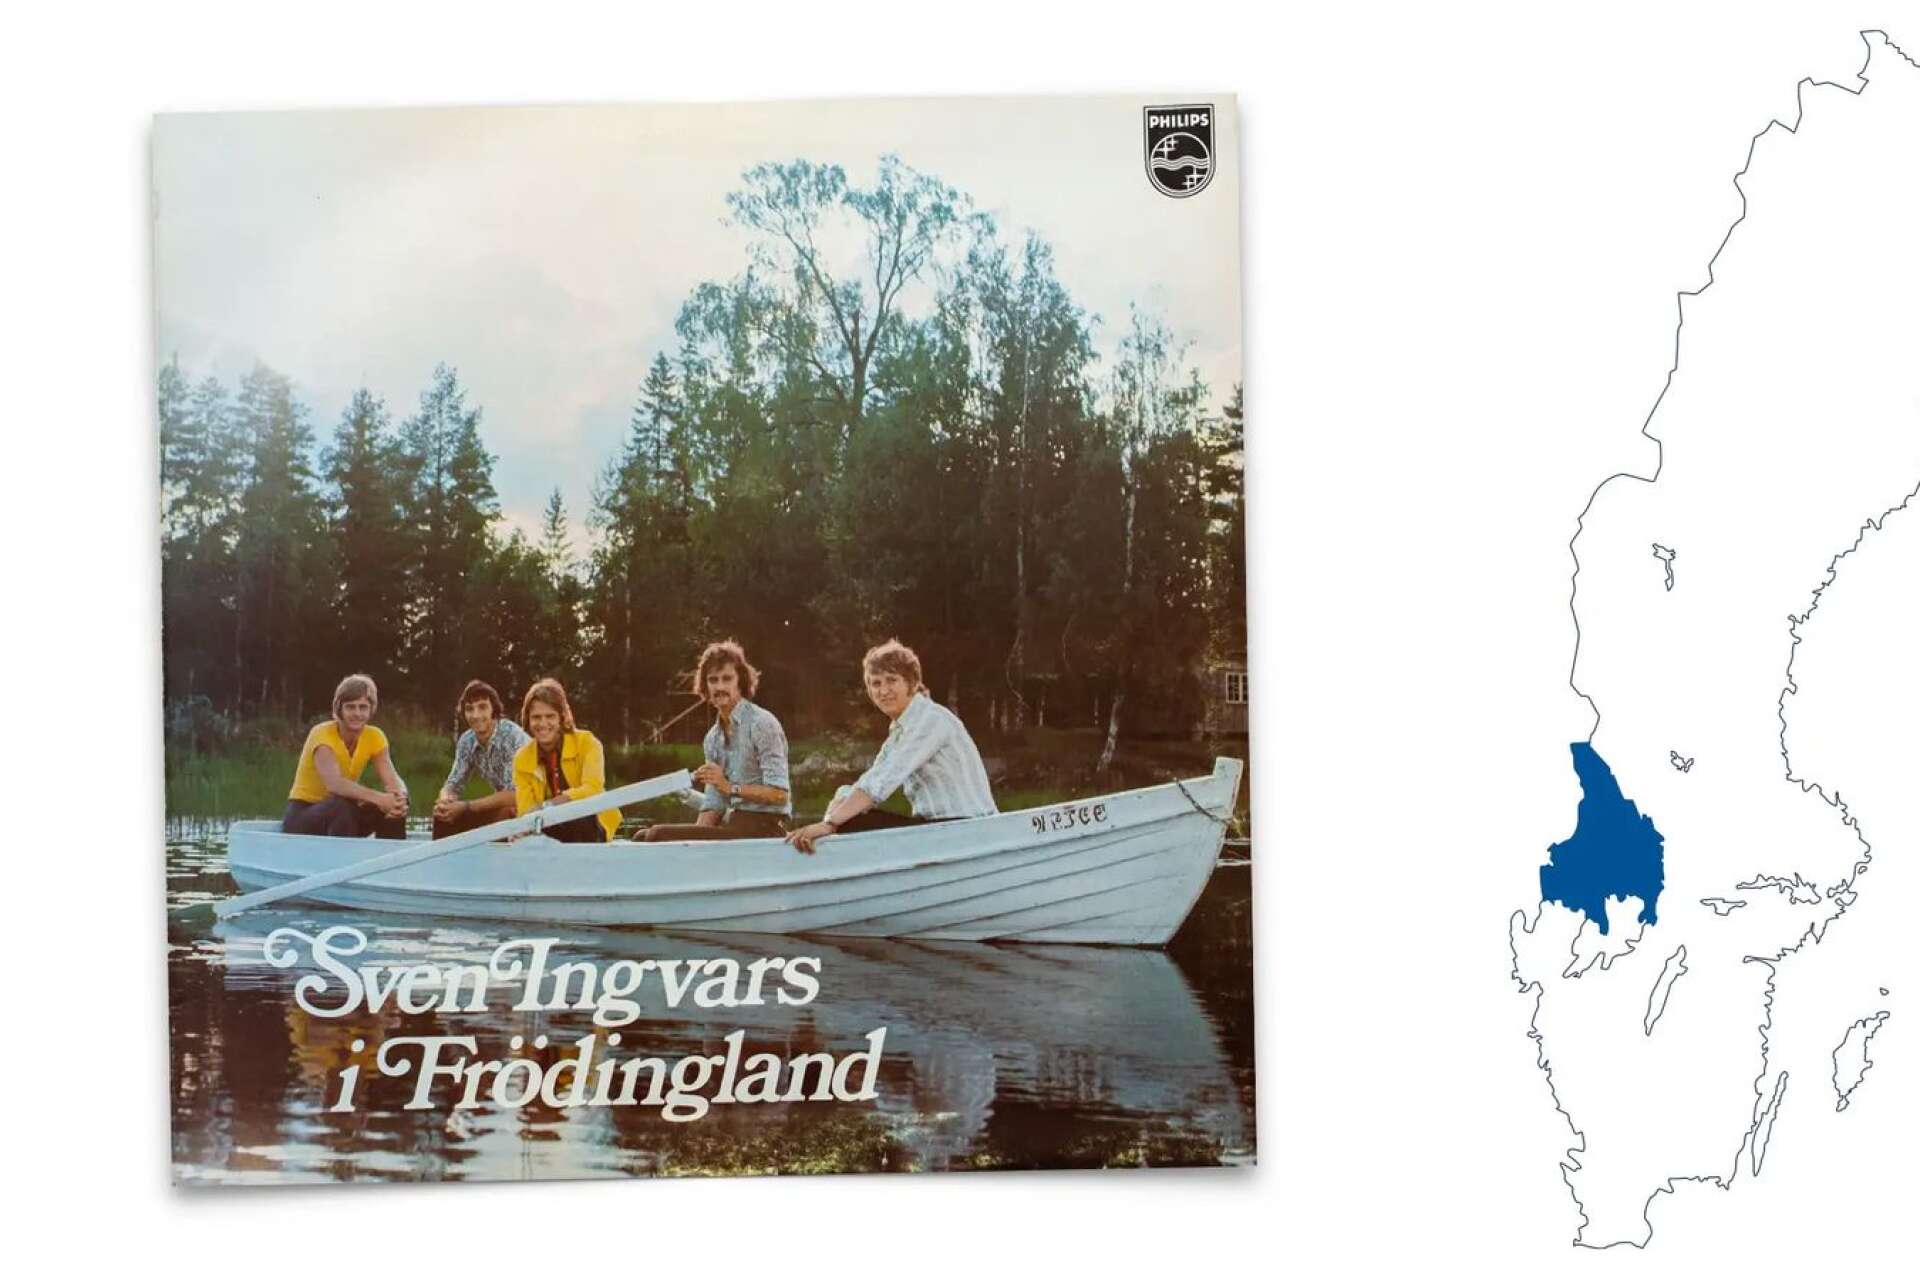 Sven-Ingvars tolkade Fröding och gjorde succé. Nu ska skivomslaget representera Värmland i en stor turismkampanj.